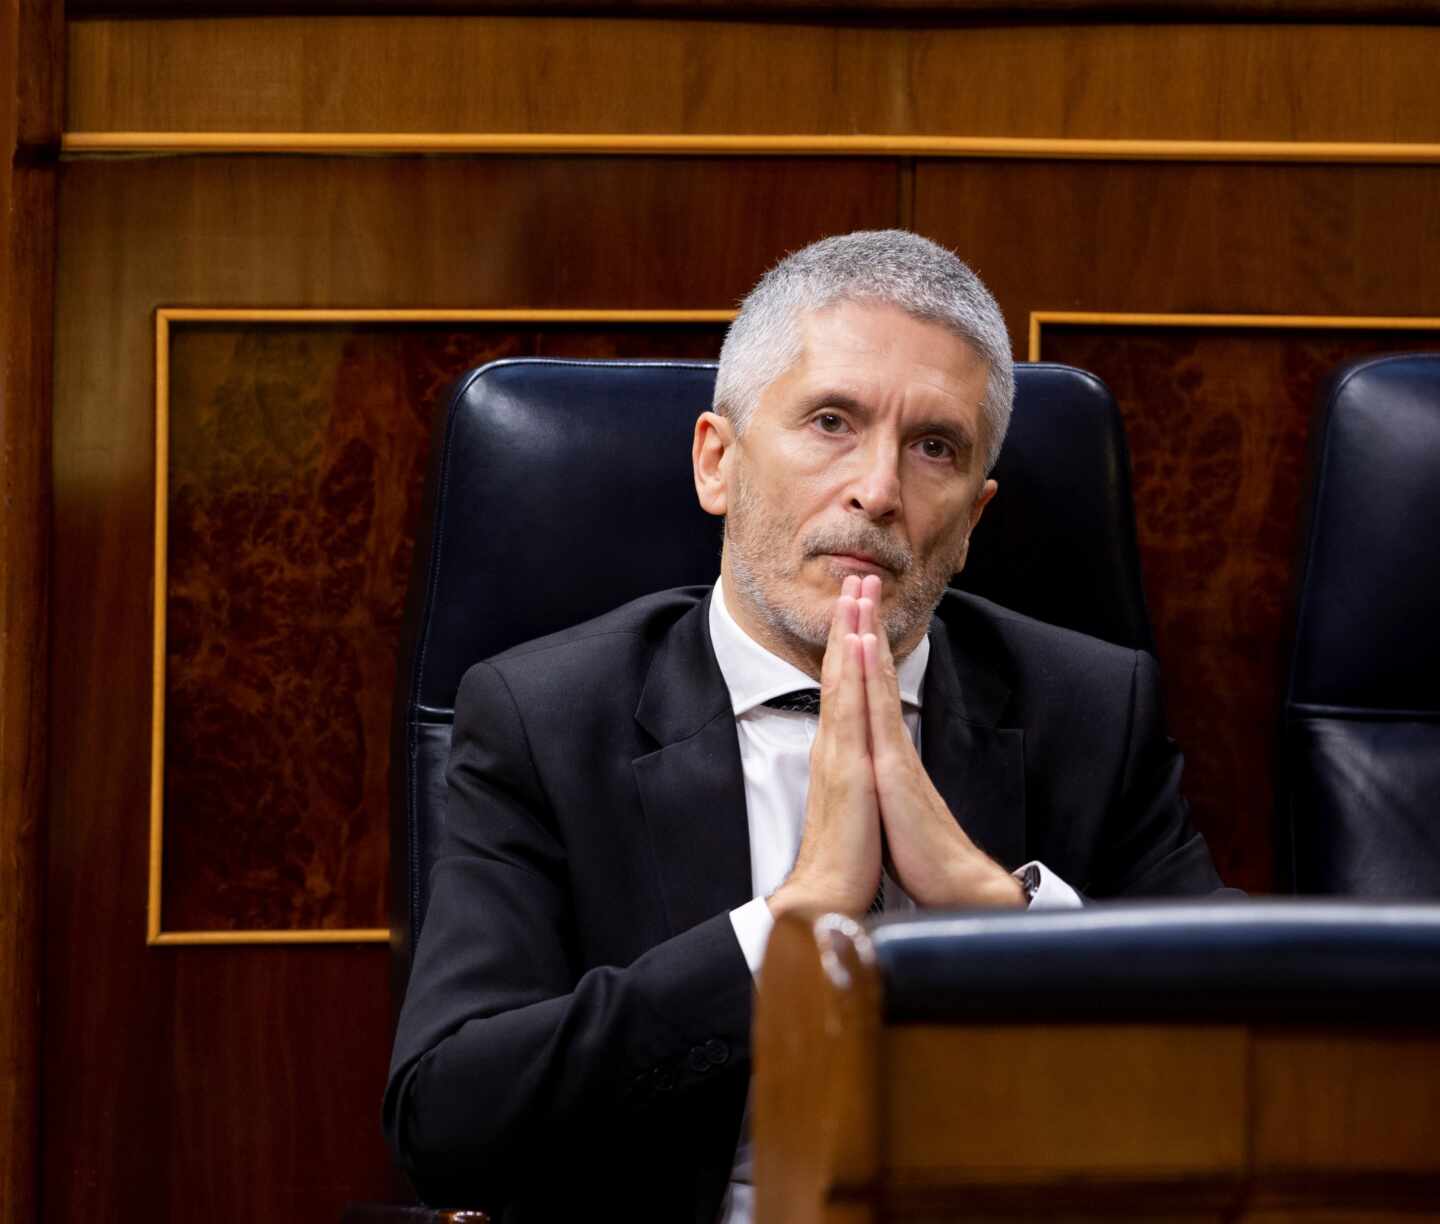 El ministro del Interior, Fernando Grande-Marlaska, este miércoles durante la sesión de control al Gobierno en el Congreso.